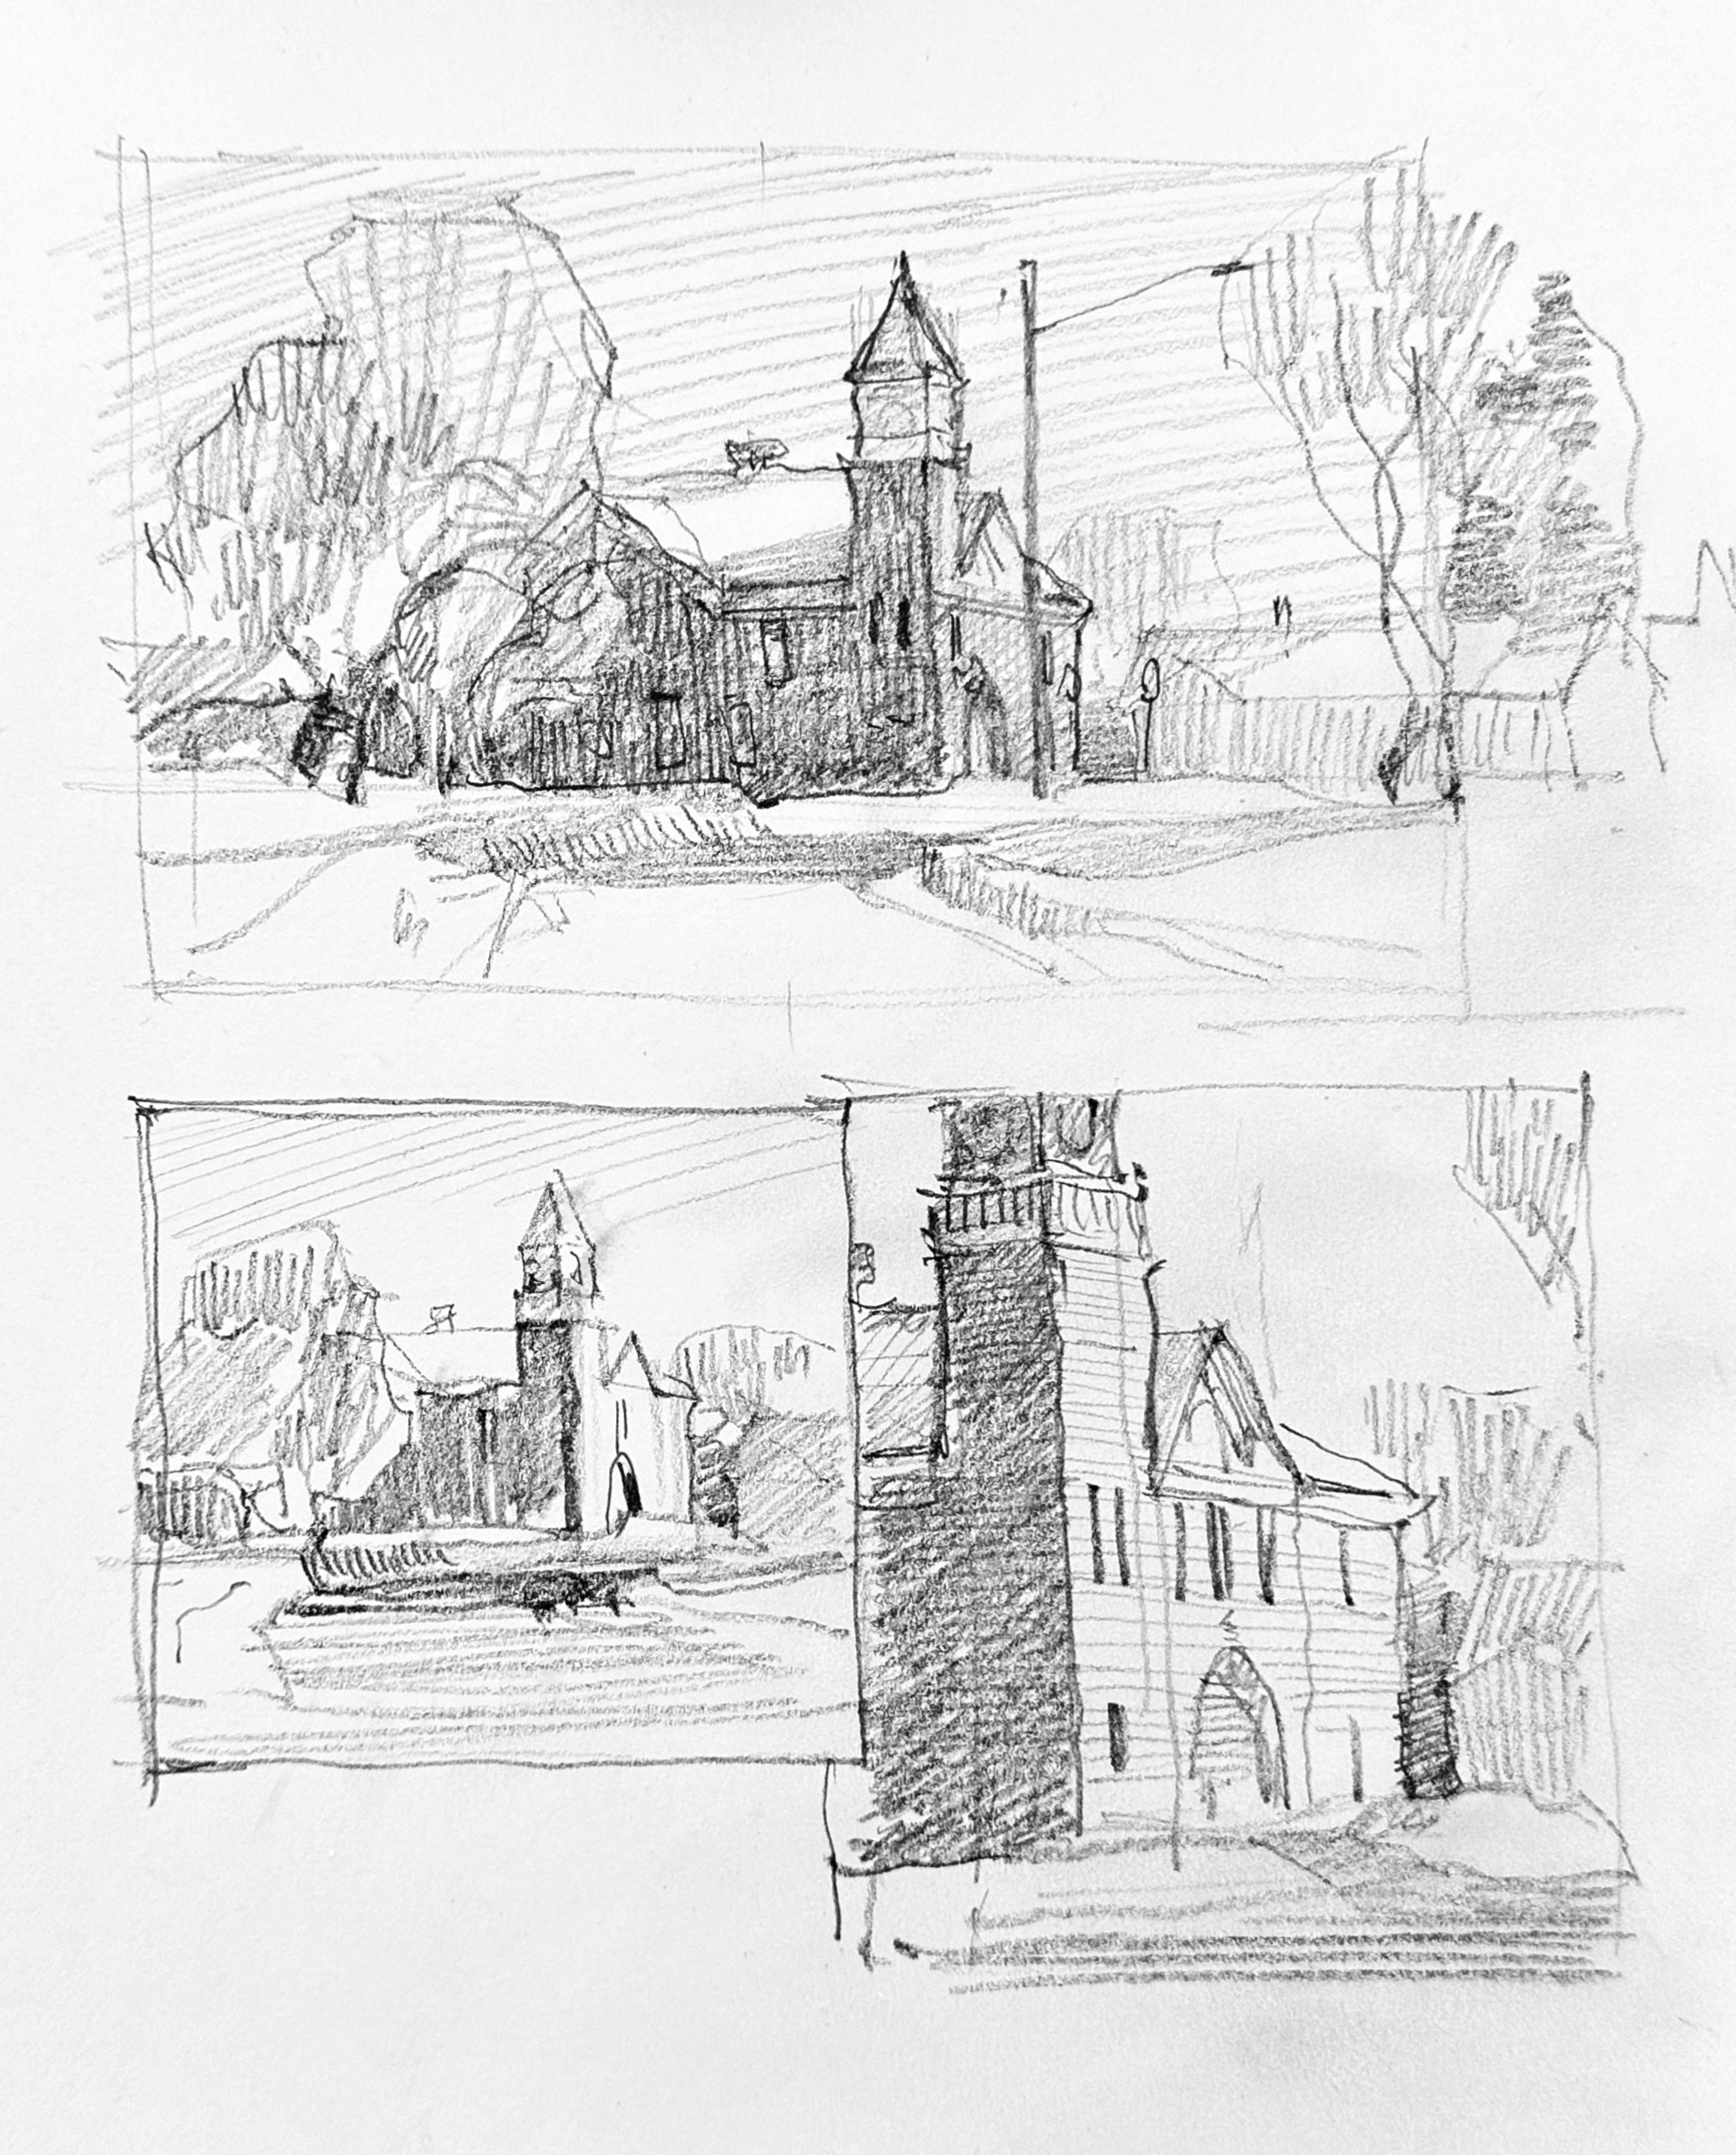 Zufar Bikbov's plein air sketches